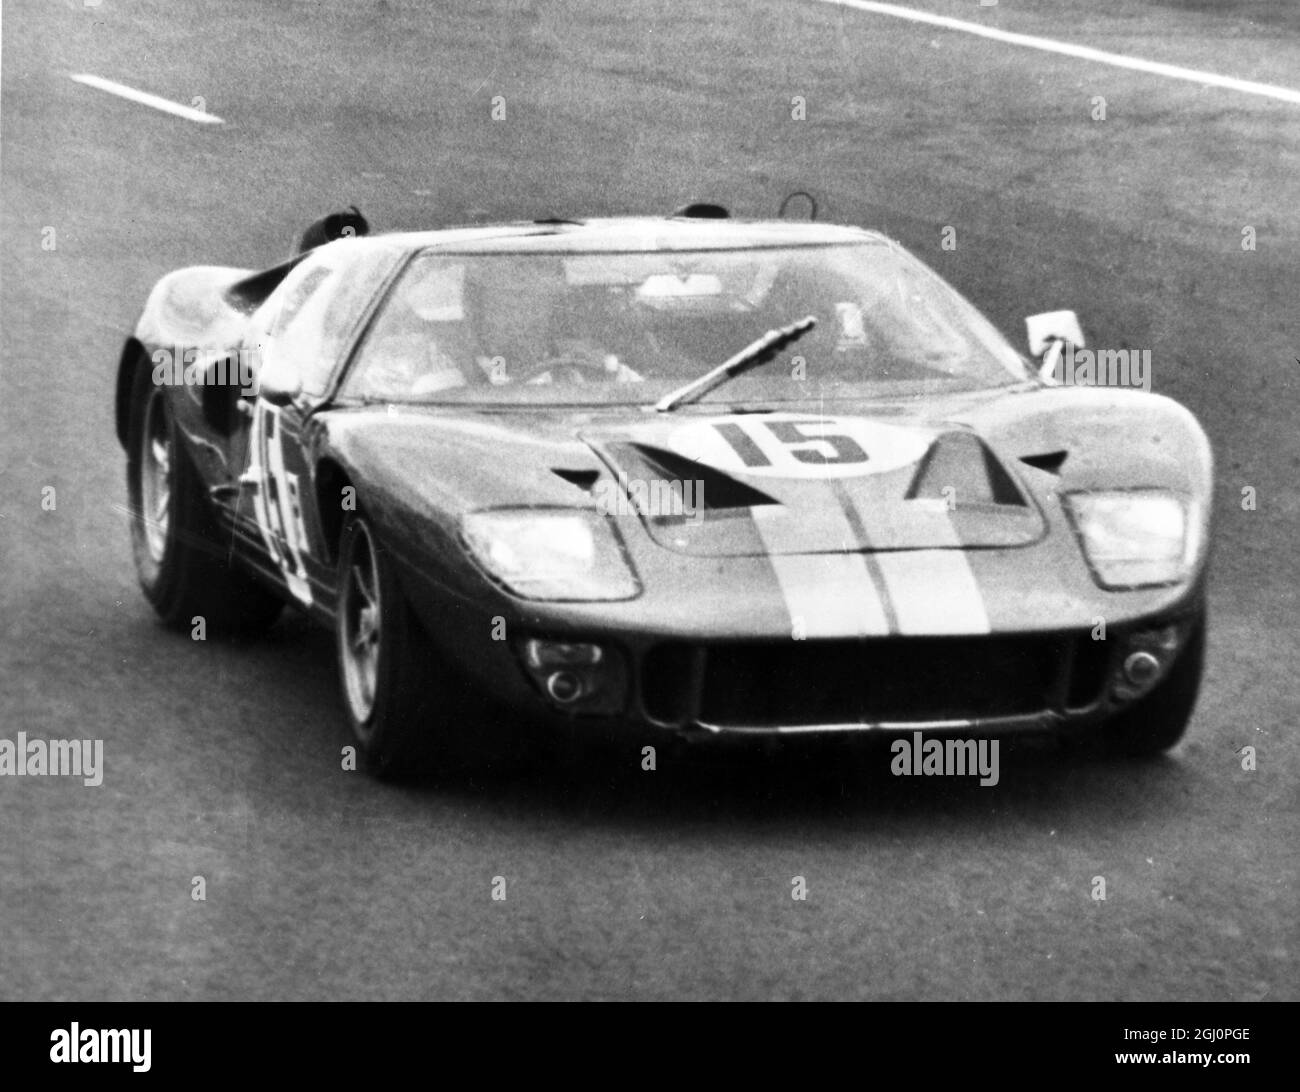 Una Ford americana 4 L7 ha mostrato durante la sua prima prova sul circuito di le Mans , 2 aprile 1966 , in preparazione della famosa gara di le Mans della durata di 24 ore che si disputerà il mese prossimo. La vettura , guidata da American Withmore, ha percorso il circuito ad una velocità media di 219 km/h. Foto Stock